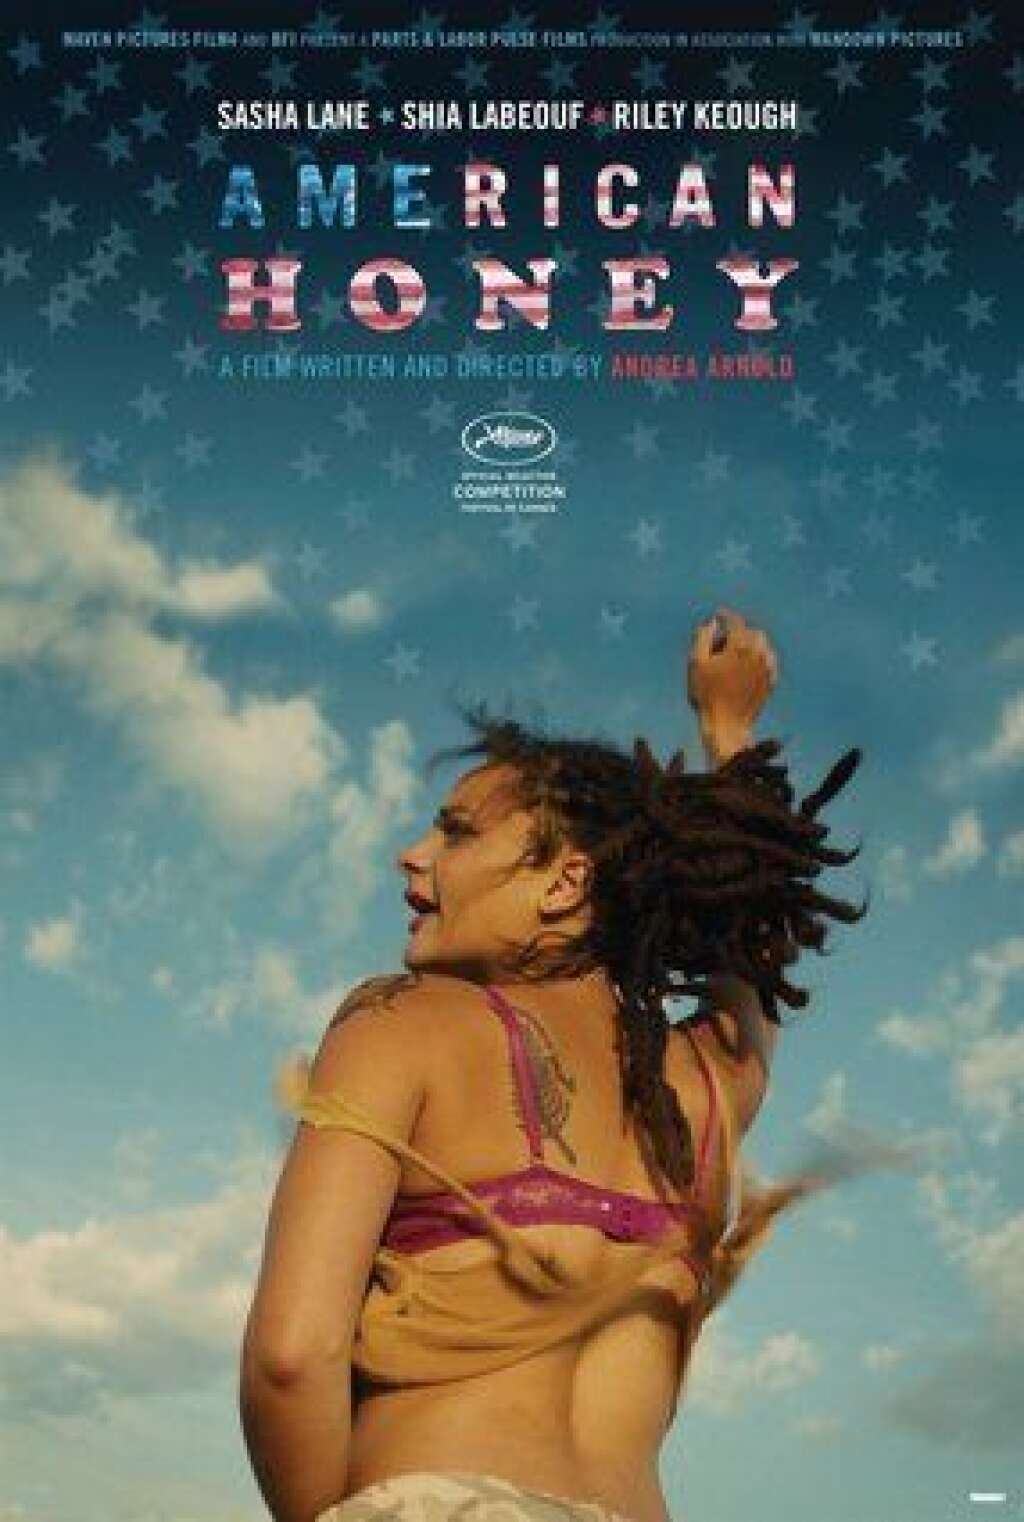 American Honey - De la Britannique Andrea Arnold, avec Shia LaBeouf. La réalisatrice de "Red Road" et "Fish Tank" (prix du jury à Cannes en 2006 et 2009), y conte l'histoire d'un jeune homme qui rejoint l'équipe commerciale d'un magazine et découvre une vie de beuveries et de sexe.